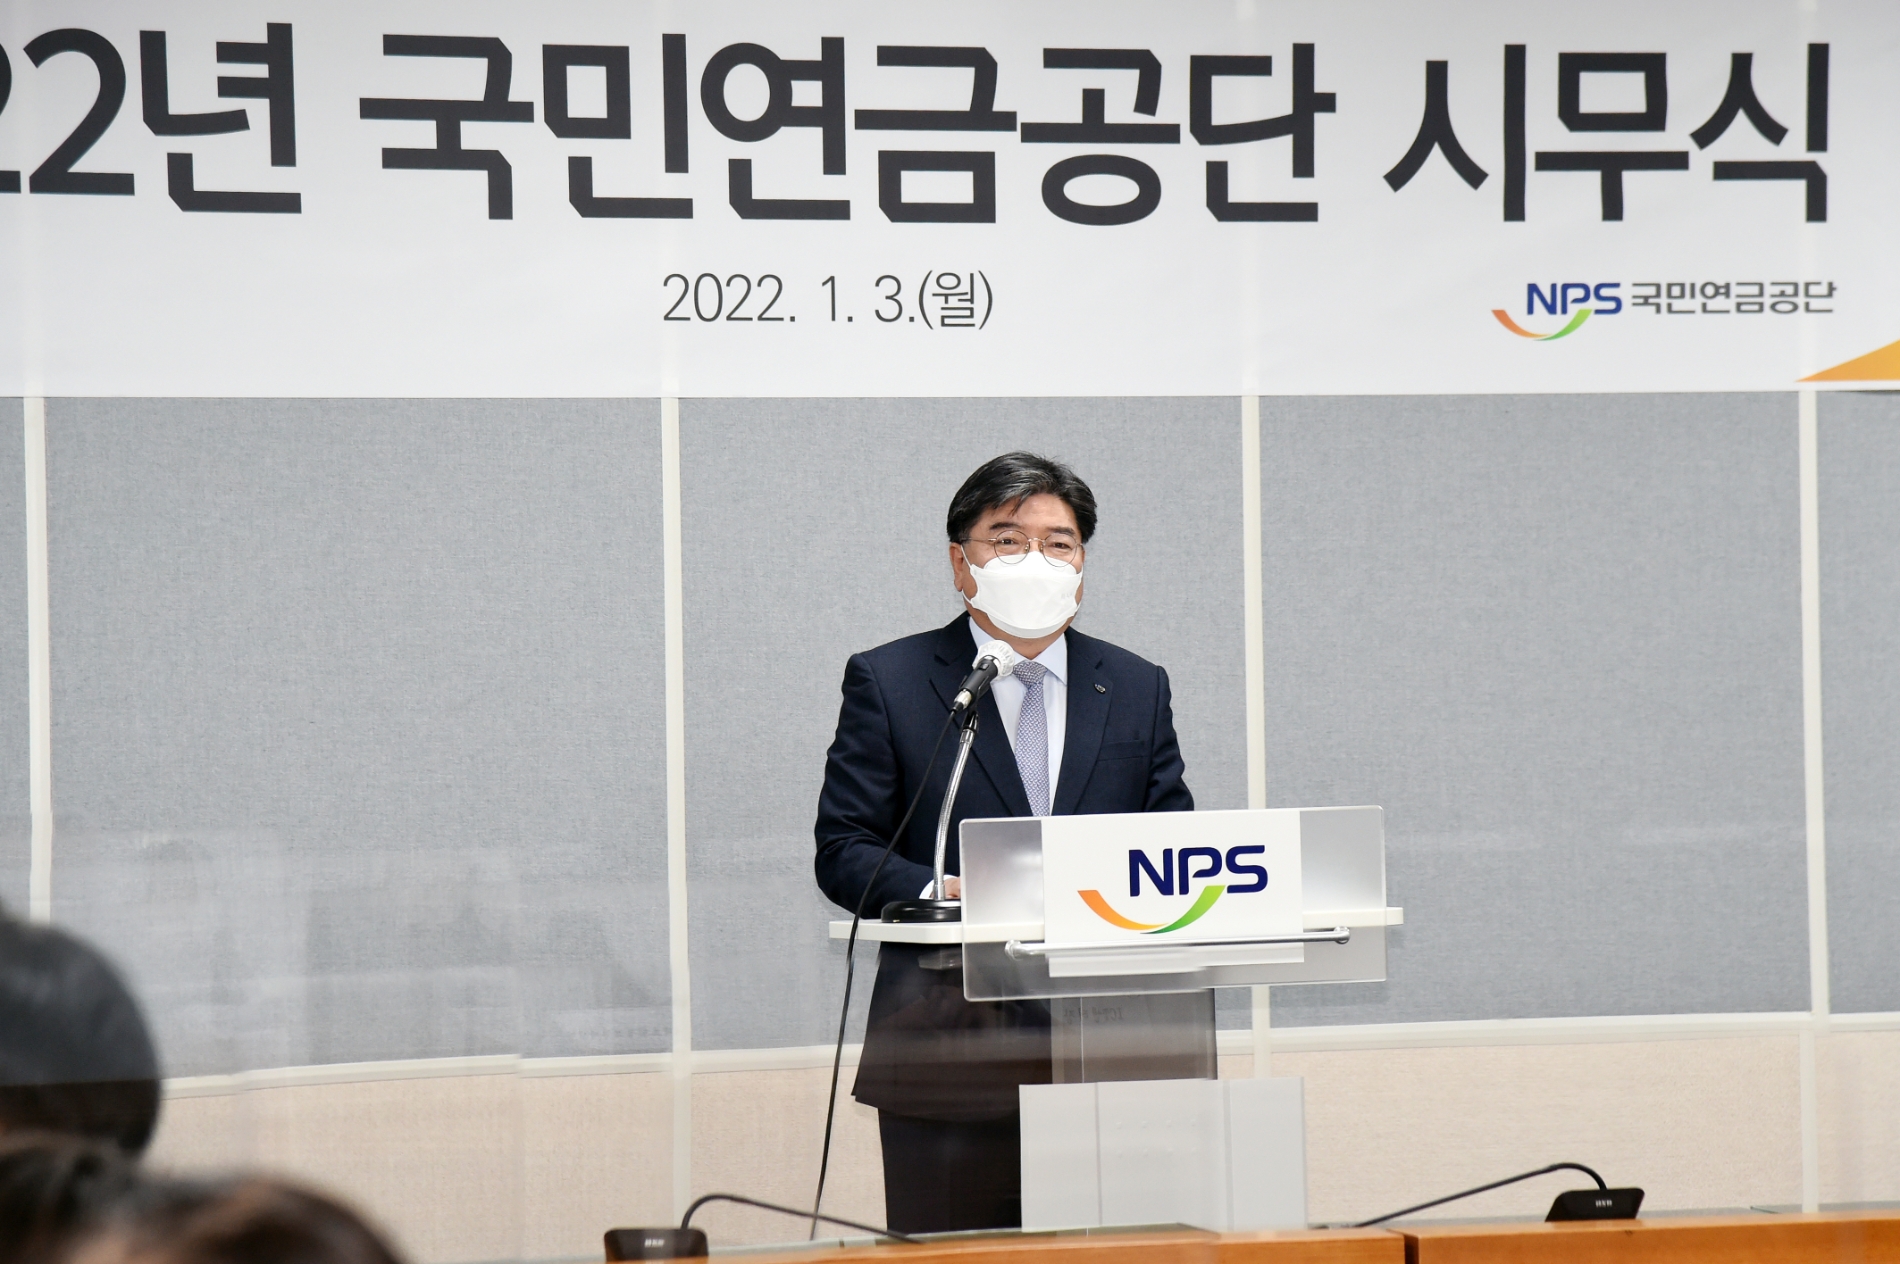 3일 국민연금공단 본사에서 열린 ‘2022년 시무식 행사’에서 김용진 이사장이 신년사를 하고 있다. / 사진제공= 국민연금공단(2022.01.03)